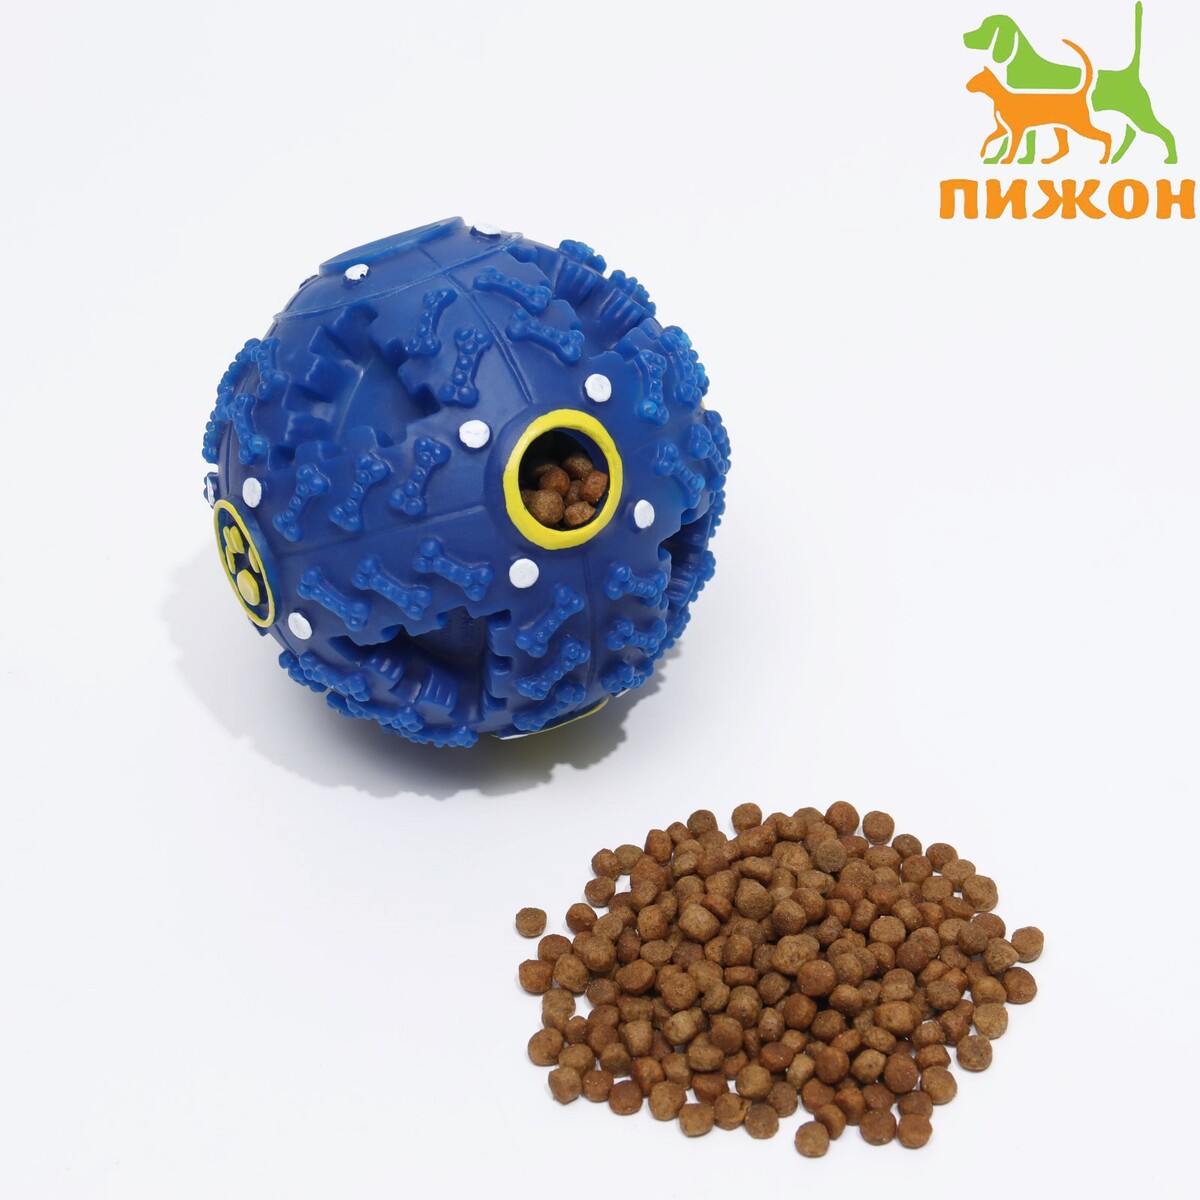 Квакающий мяч для собак большой, жесткий, 9,5 см, темно-синий квакающий мяч для собак большой жесткий 9 5 см темно синий